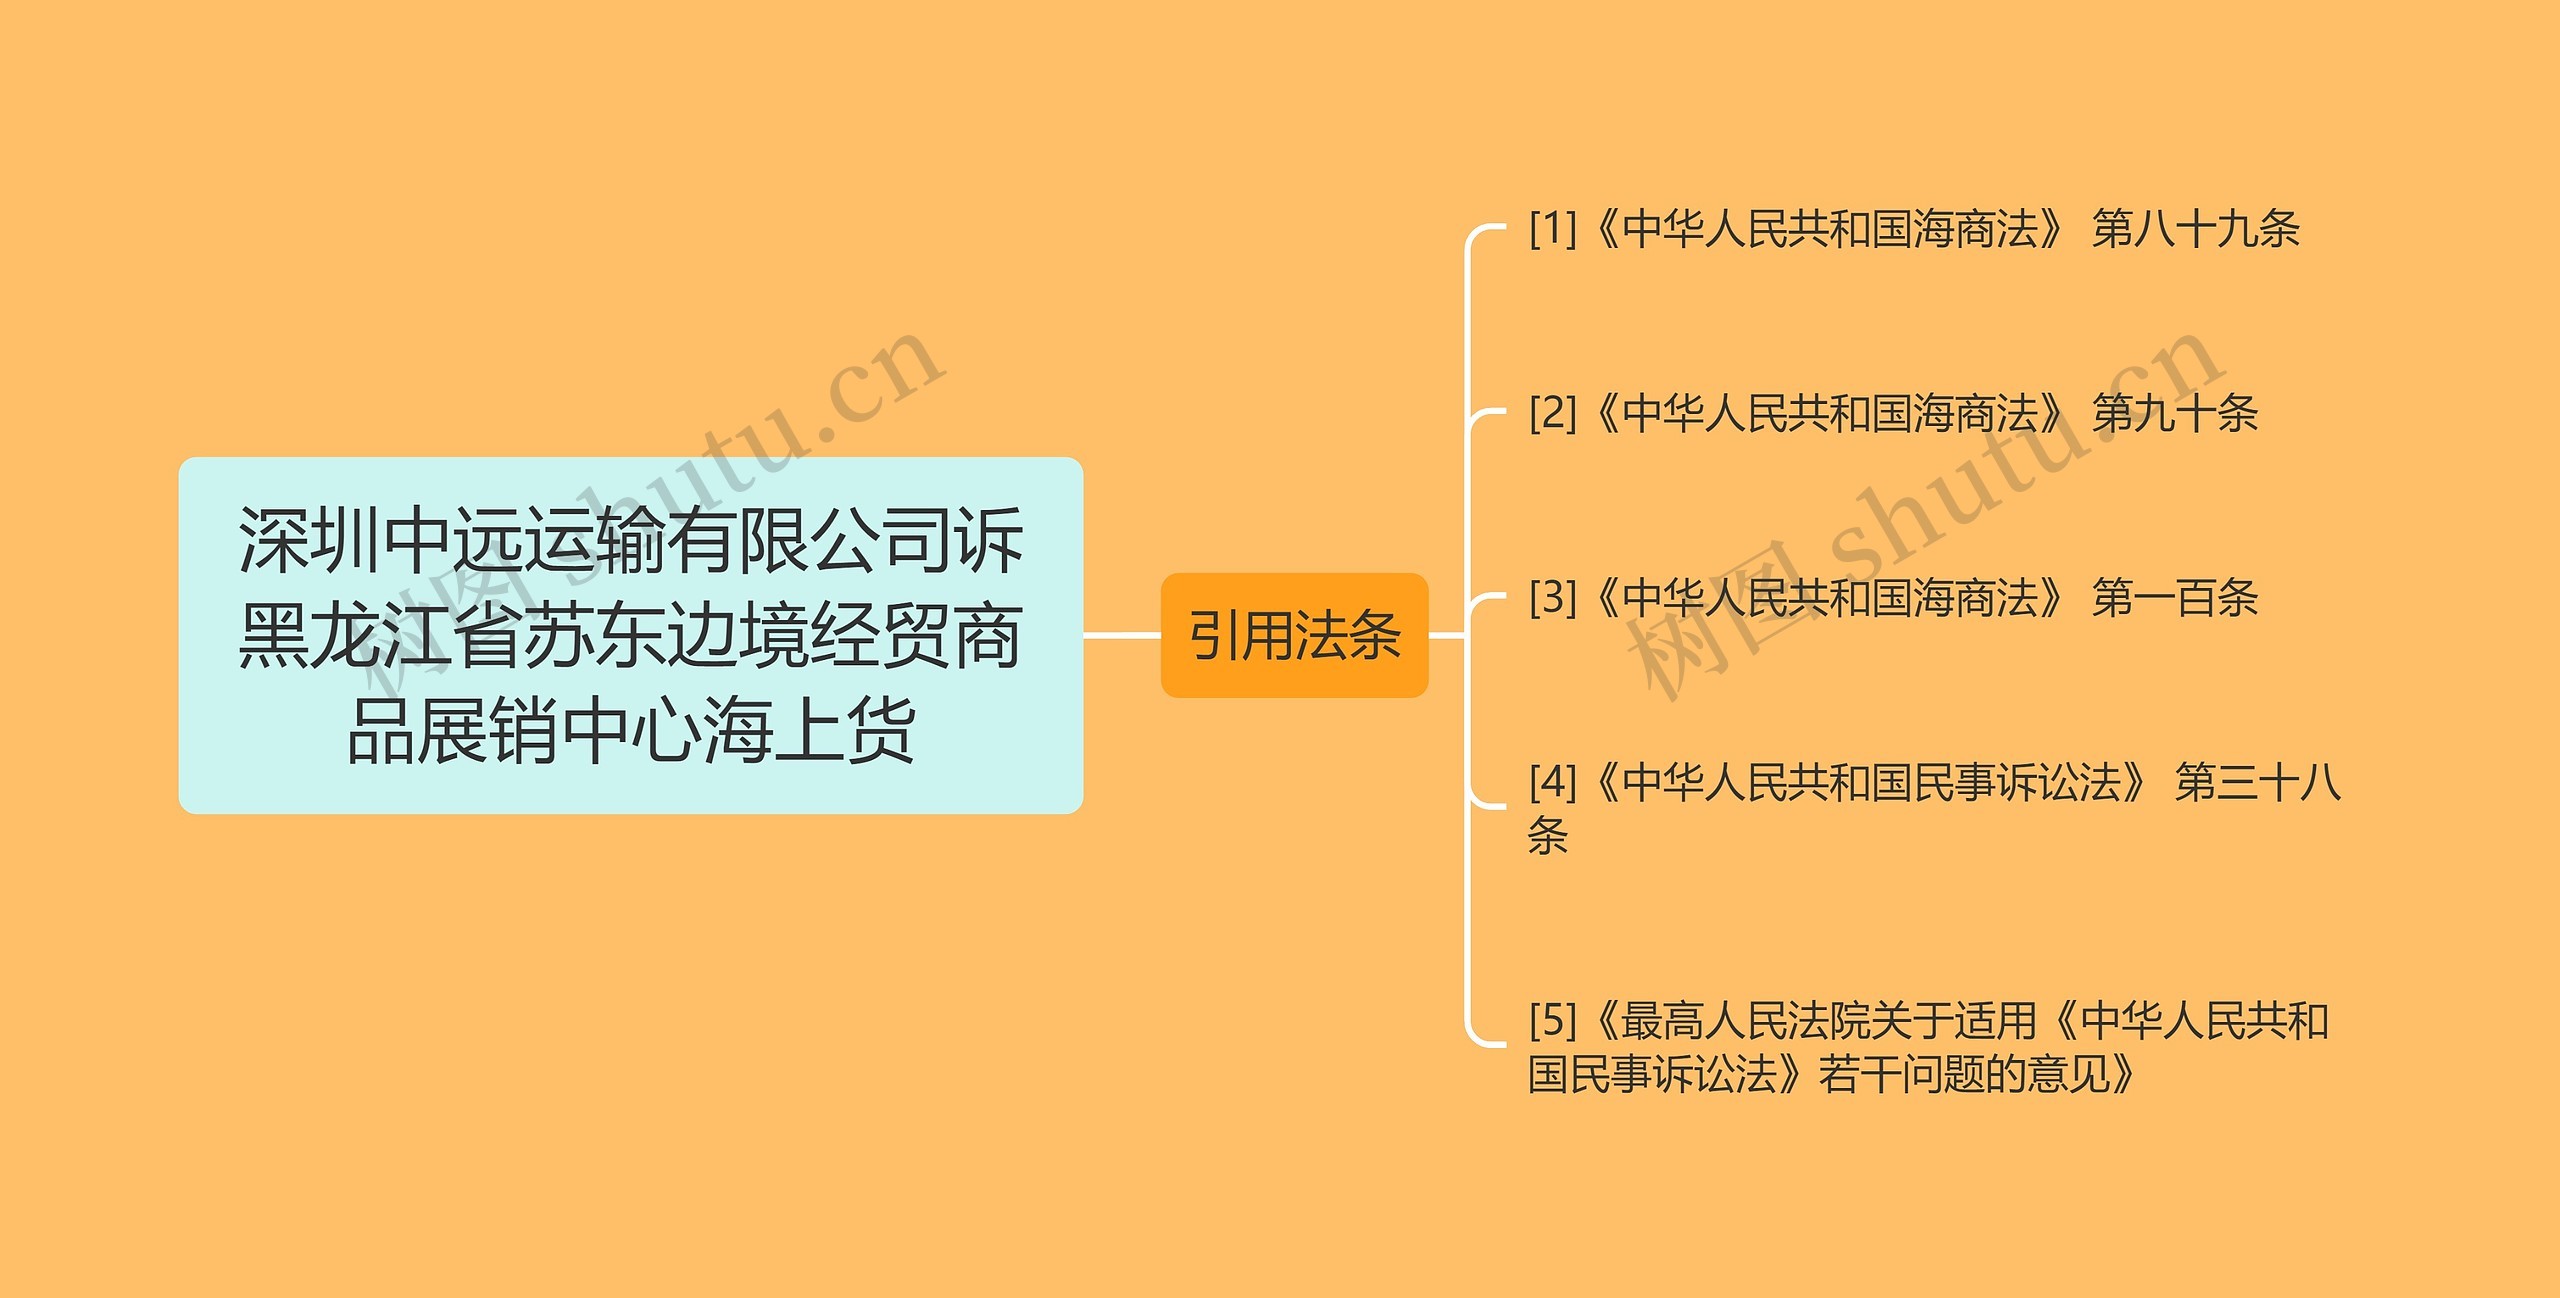 深圳中远运输有限公司诉黑龙江省苏东边境经贸商品展销中心海上货